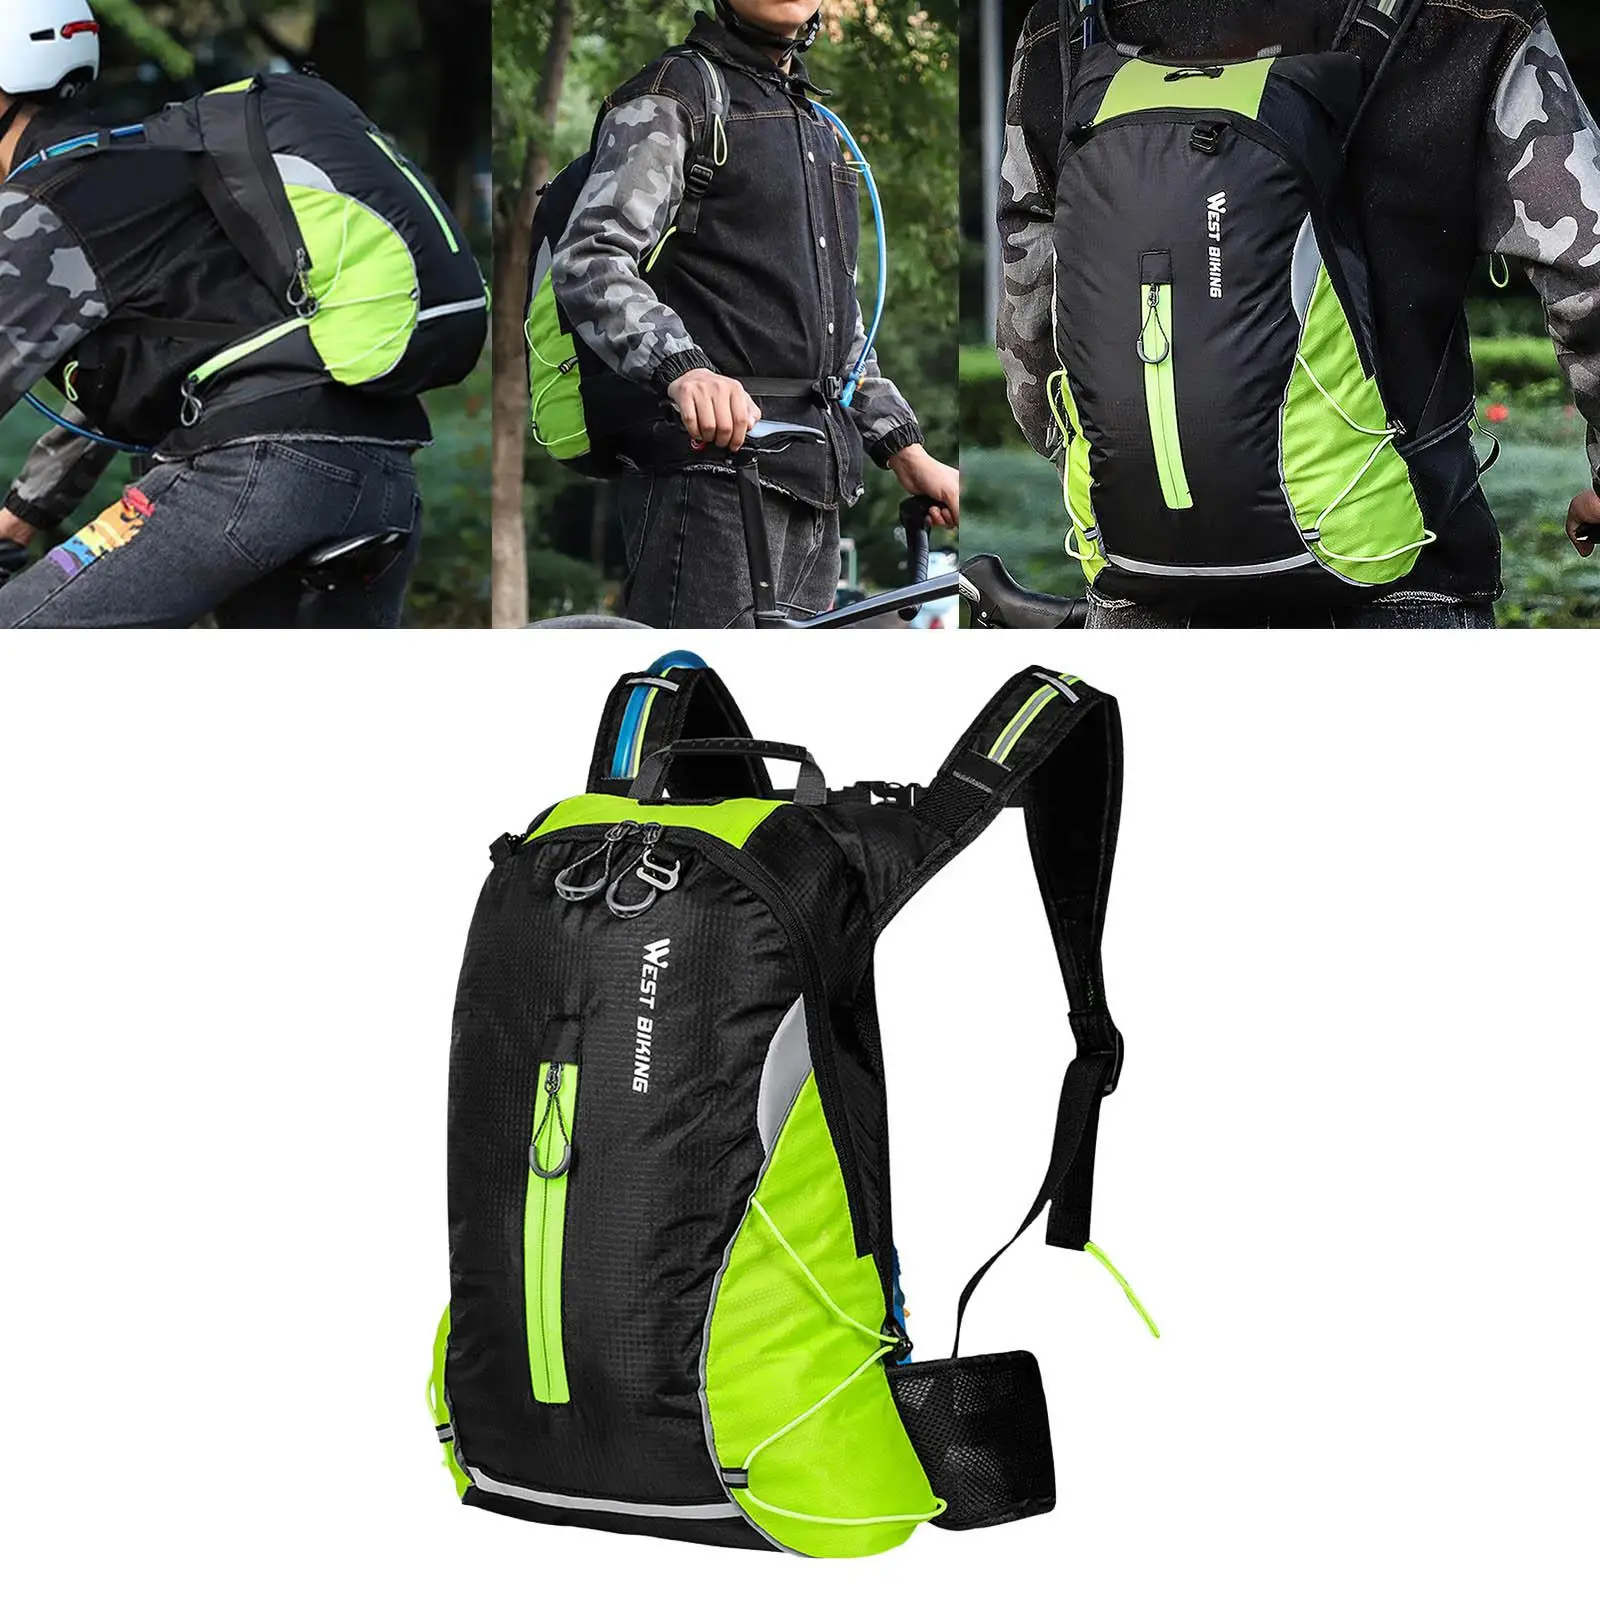 16L Cycling Knapsack Camping Shoulder Bag Backpack Hiking Sports Travel